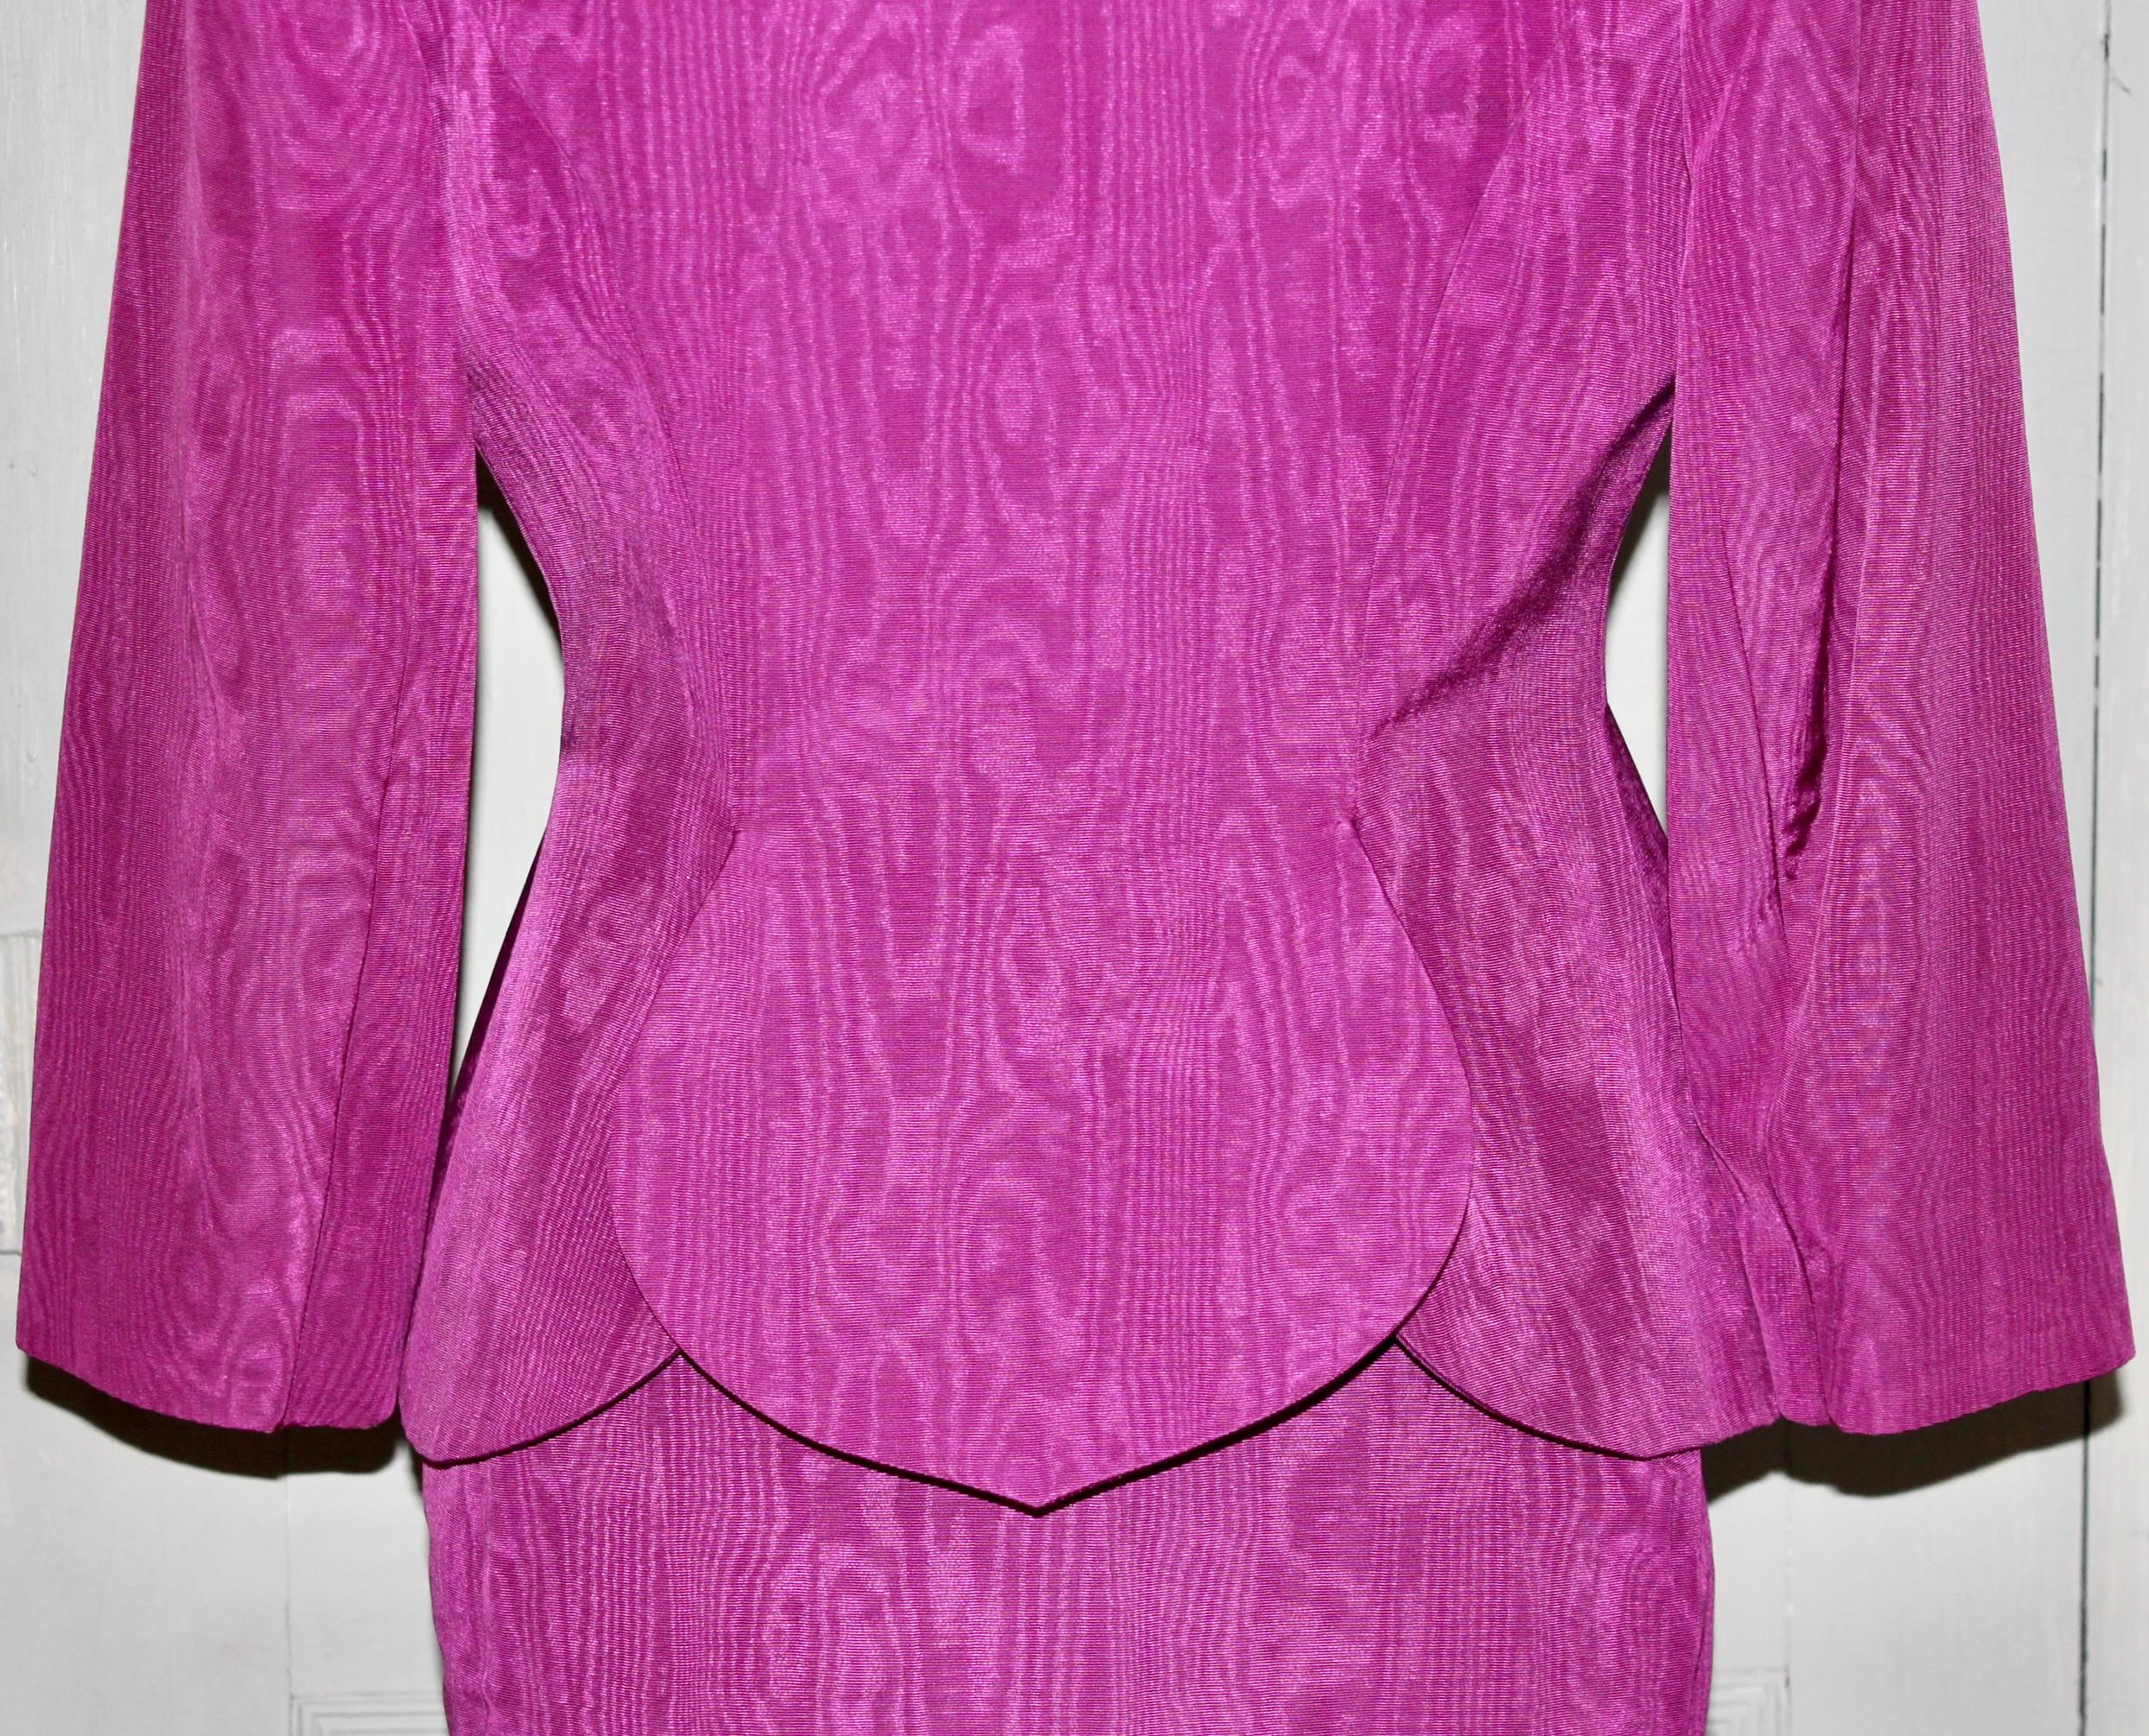 Lanvin, Paris Magenta Moire Suit For Sale 2